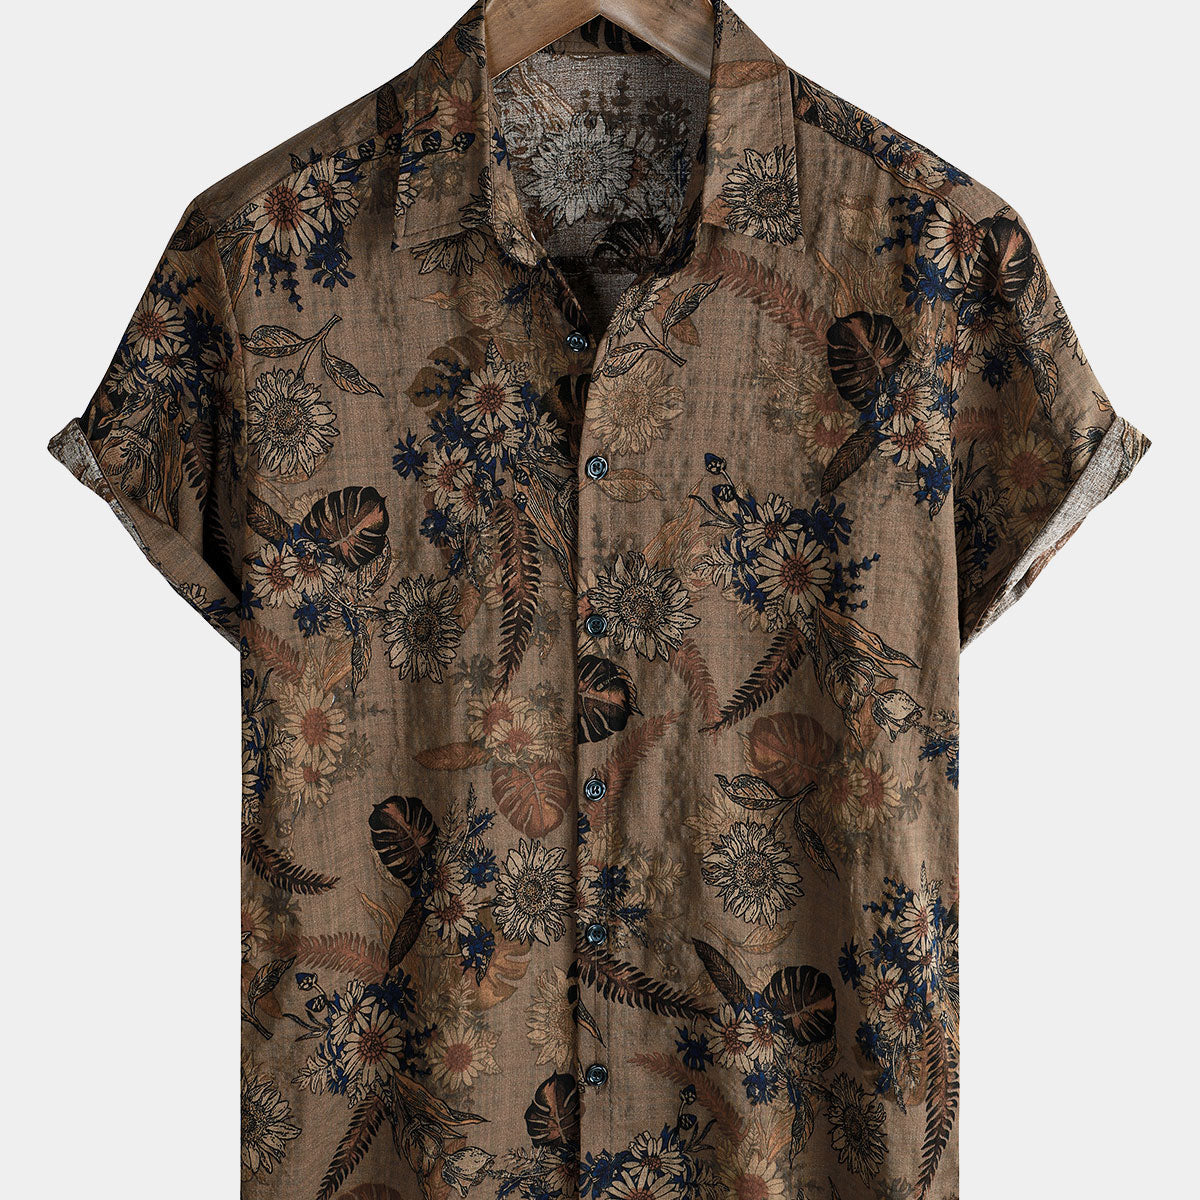 Chemise boutonnée à manches courtes pour hommes, Vintage, vacances florales, été